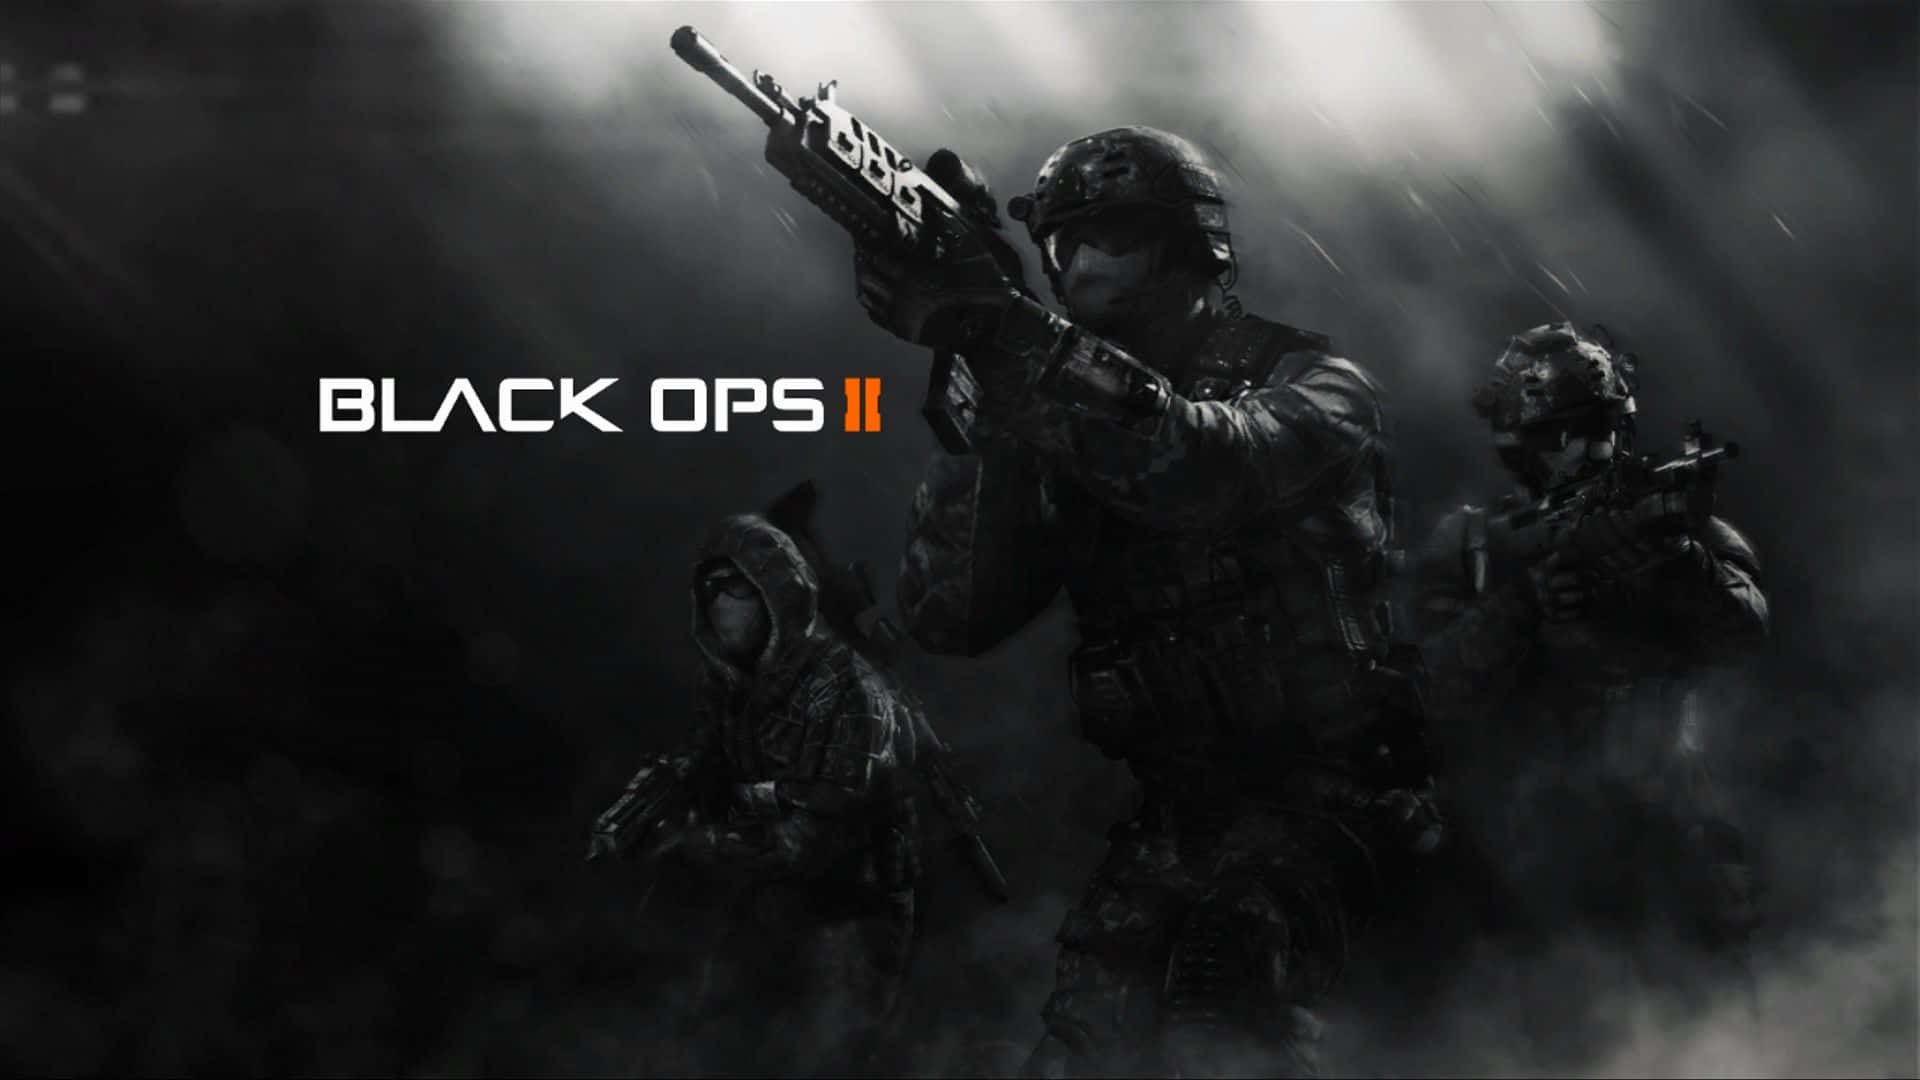 Callof Duty Black Ops 2 Console Game - Videogioco Per Console. Sfondo